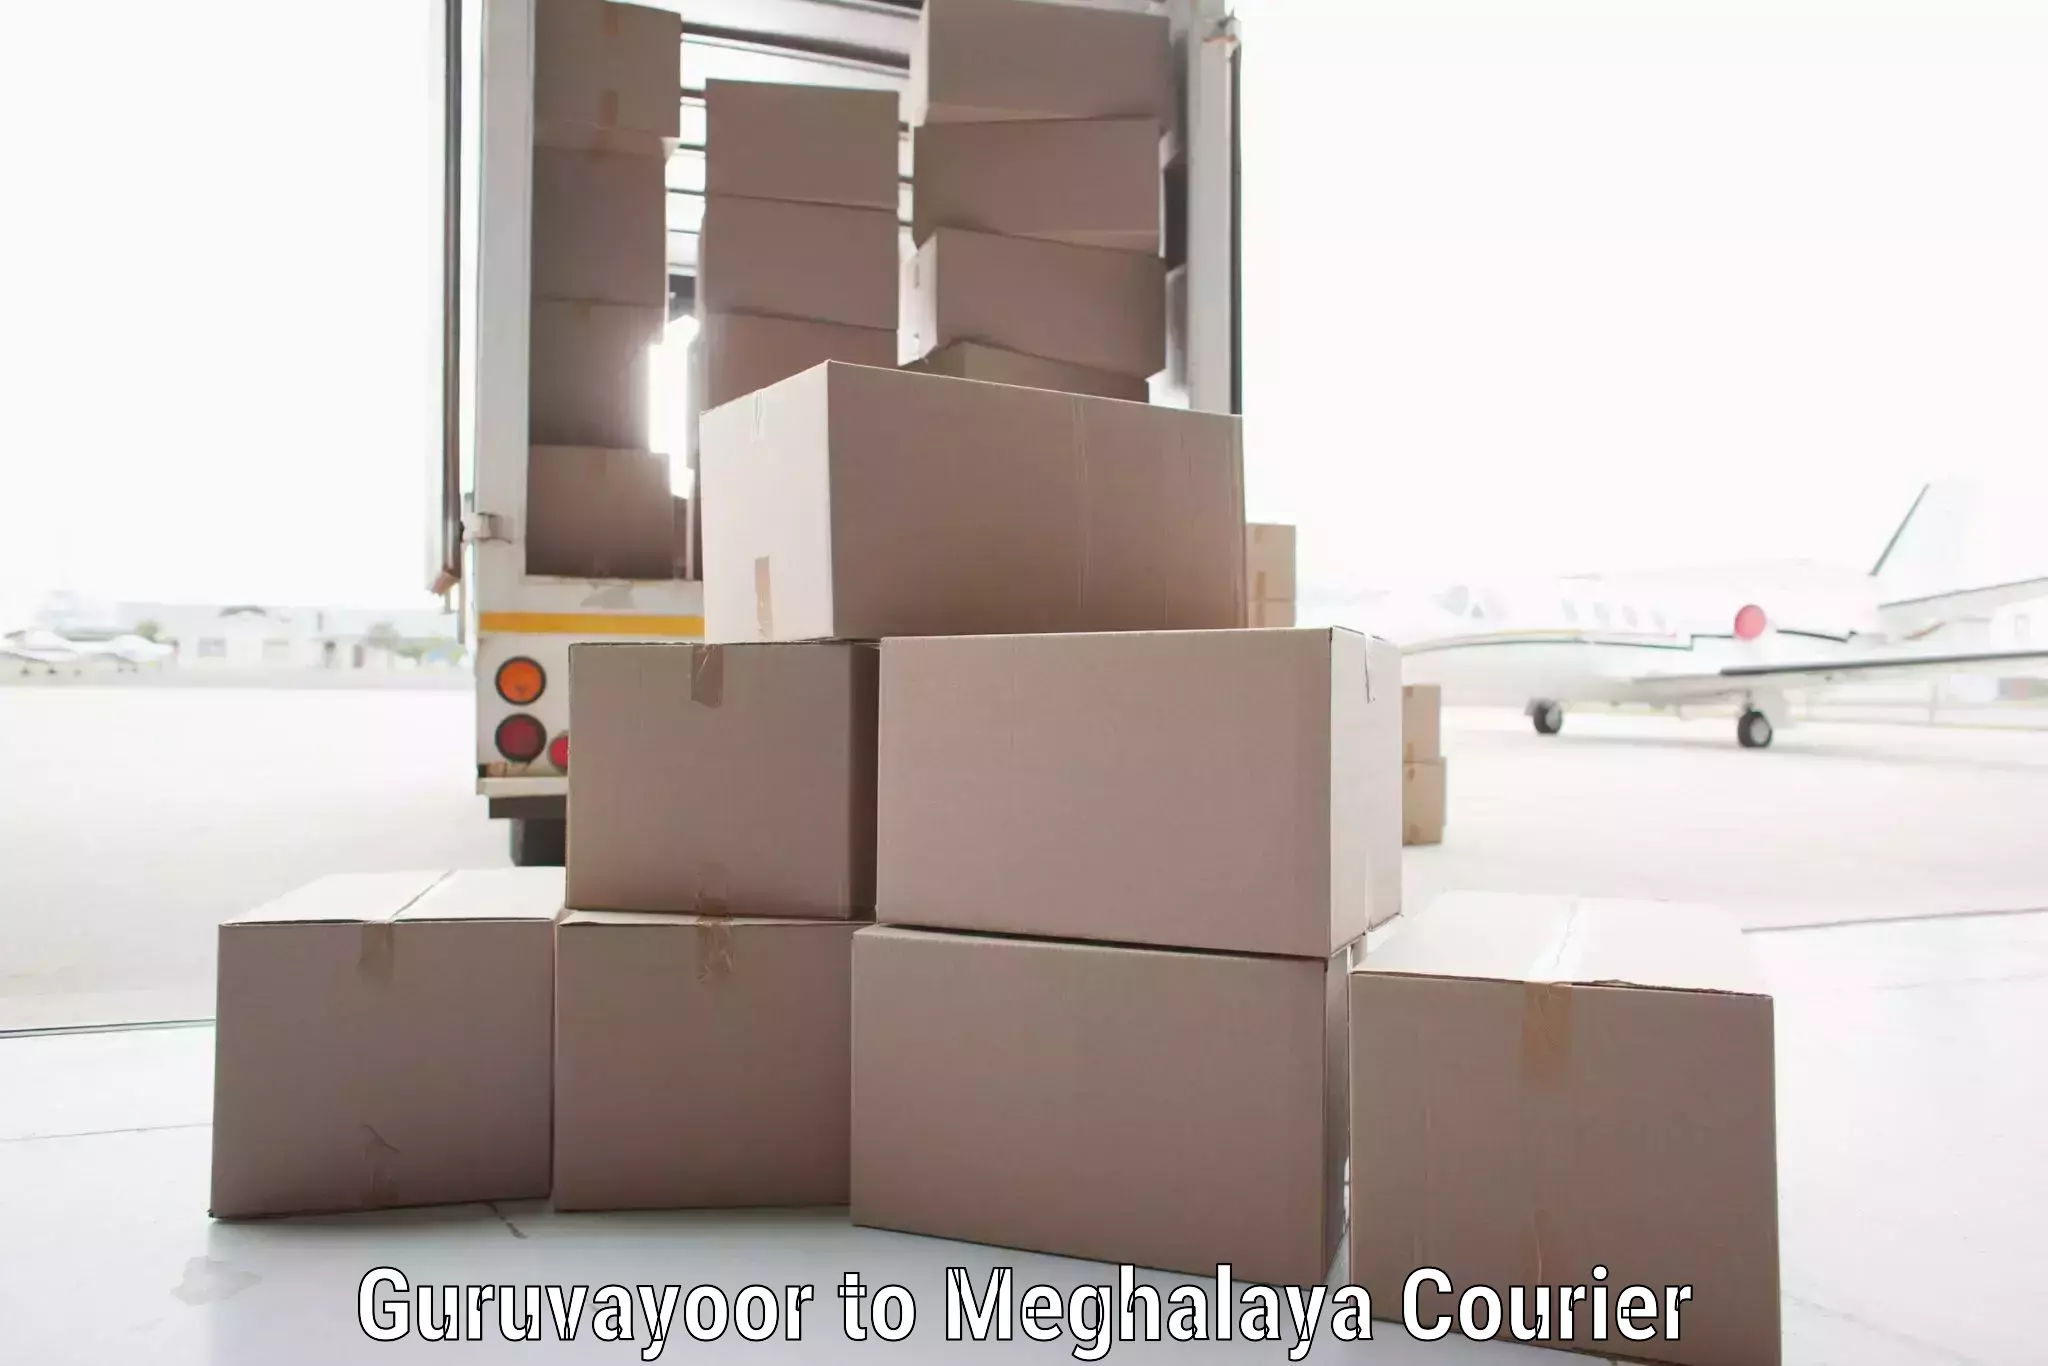 Cost-effective courier options in Guruvayoor to Nongpoh